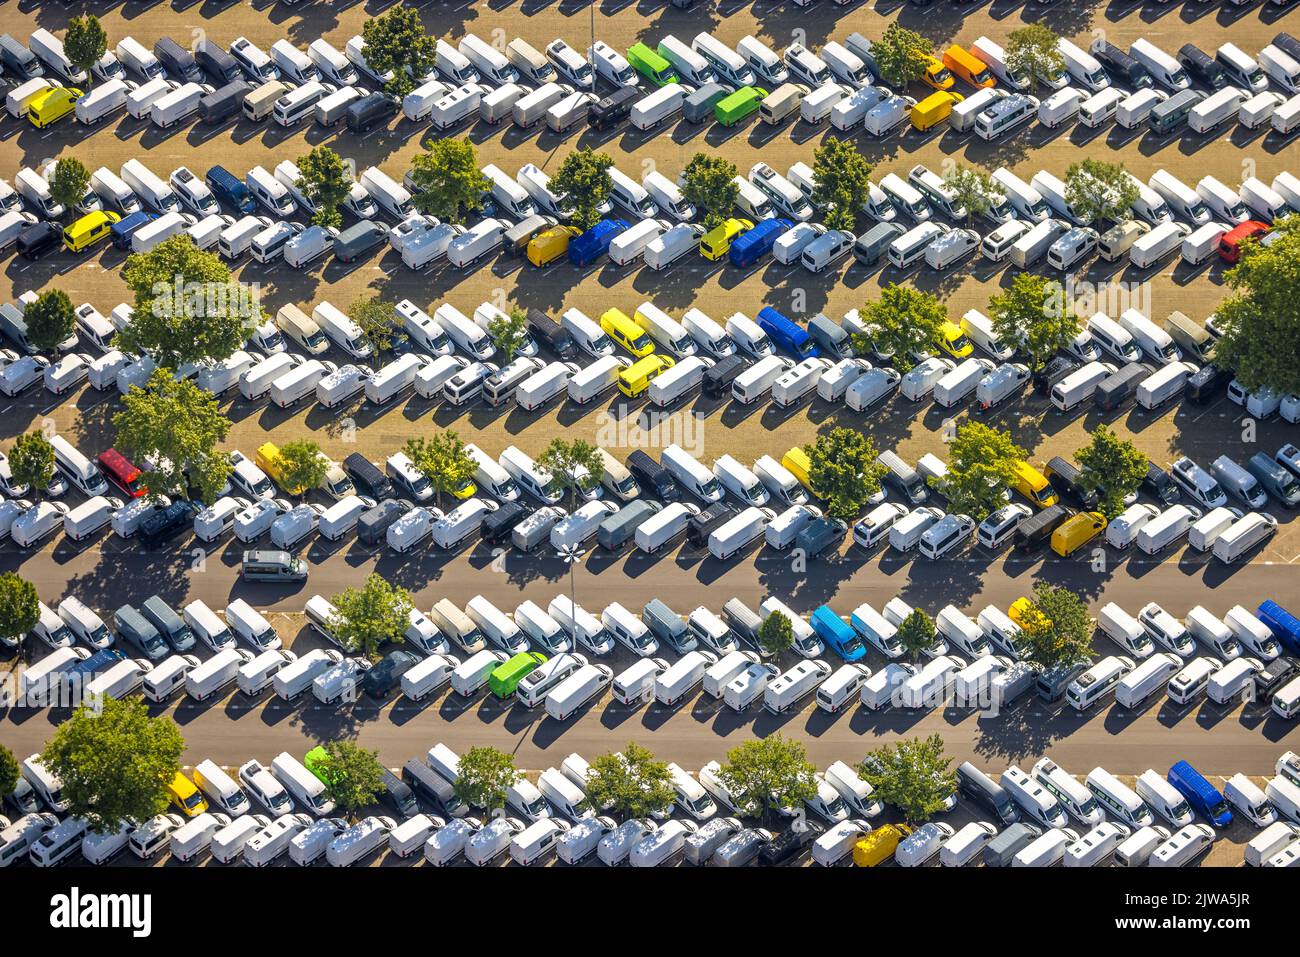 Luftbild, Automobillager Loading Mercedes Parkplätze, Formen und Farben, Mörsenbroich, Düsseldorf, Rheinland, Nordrhein-Westfalen, Deutschland, Automo Stockfoto